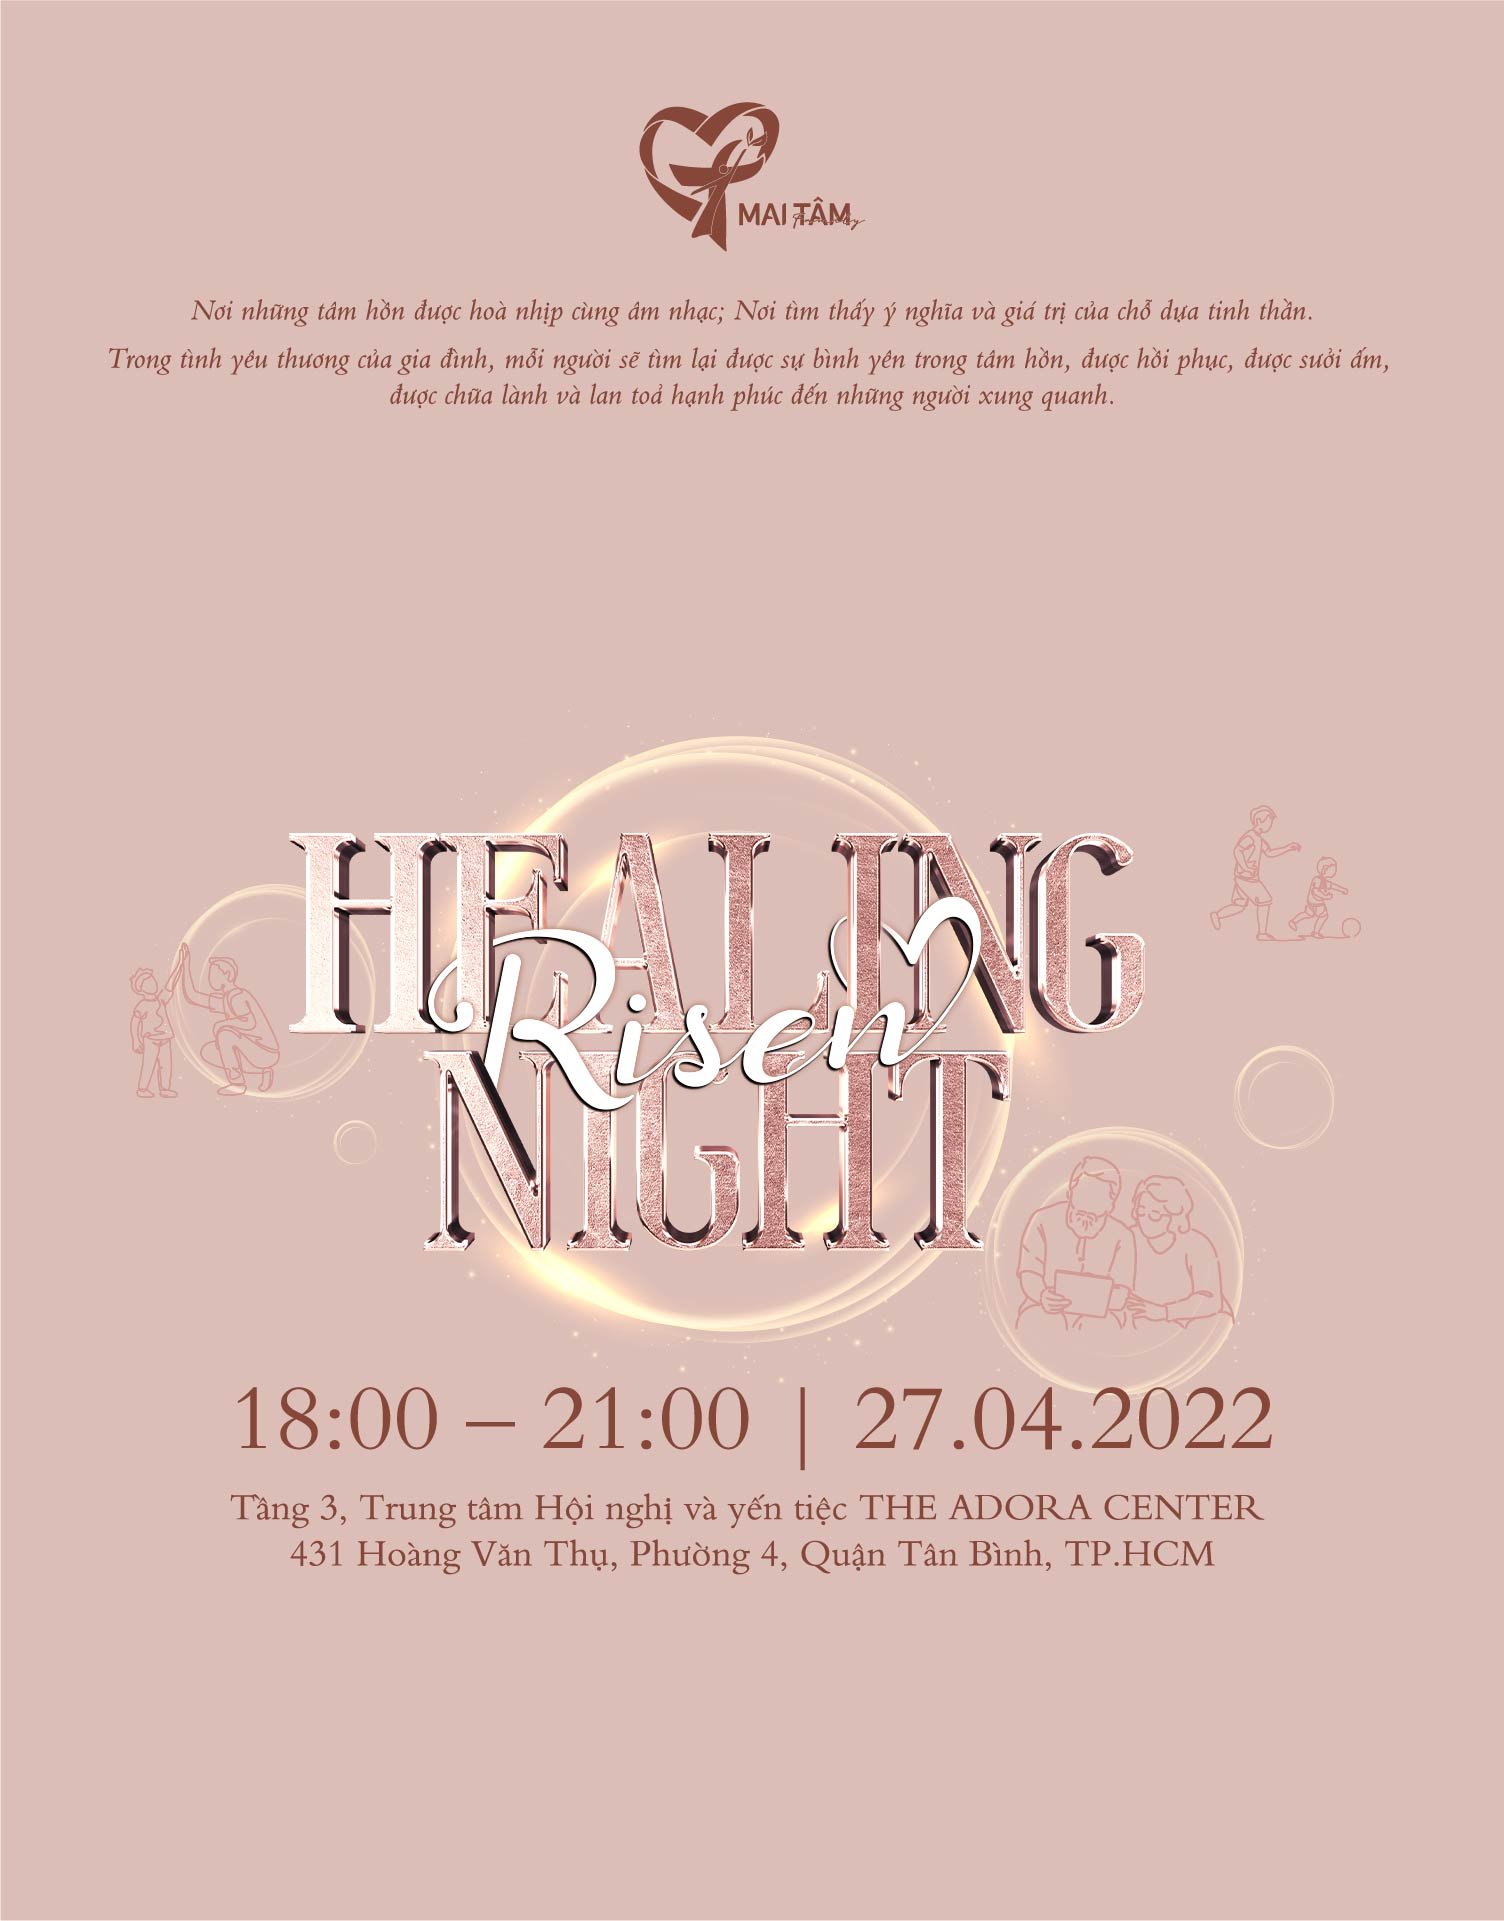 Healing Night - Risen: Đêm diễn nguyện ngời sáng hy vọng